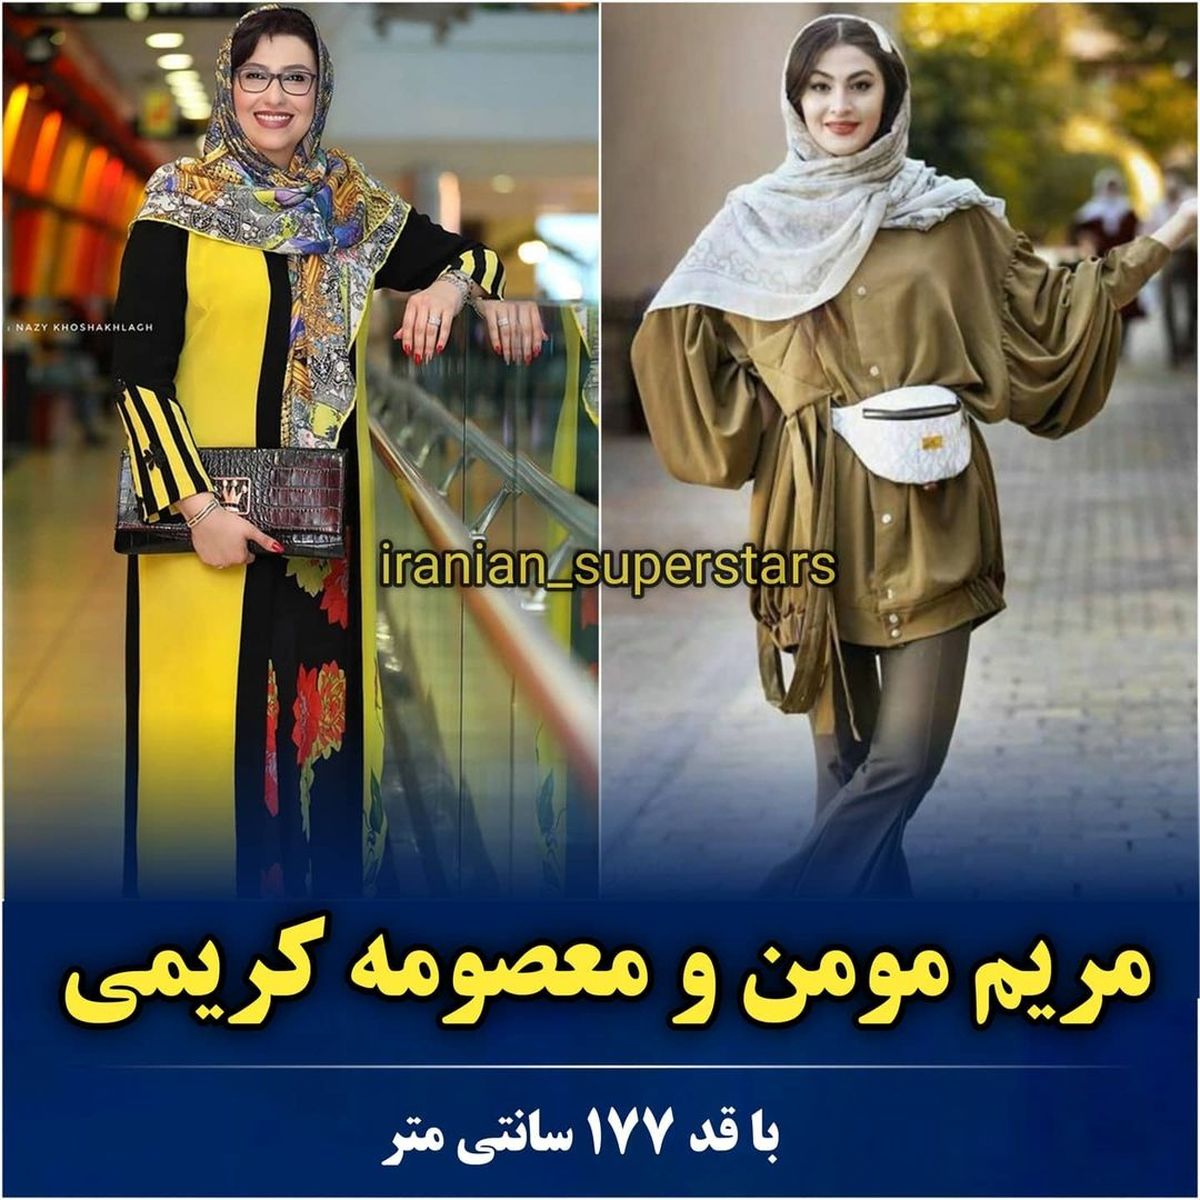 iranian_superstars_1626167754_10